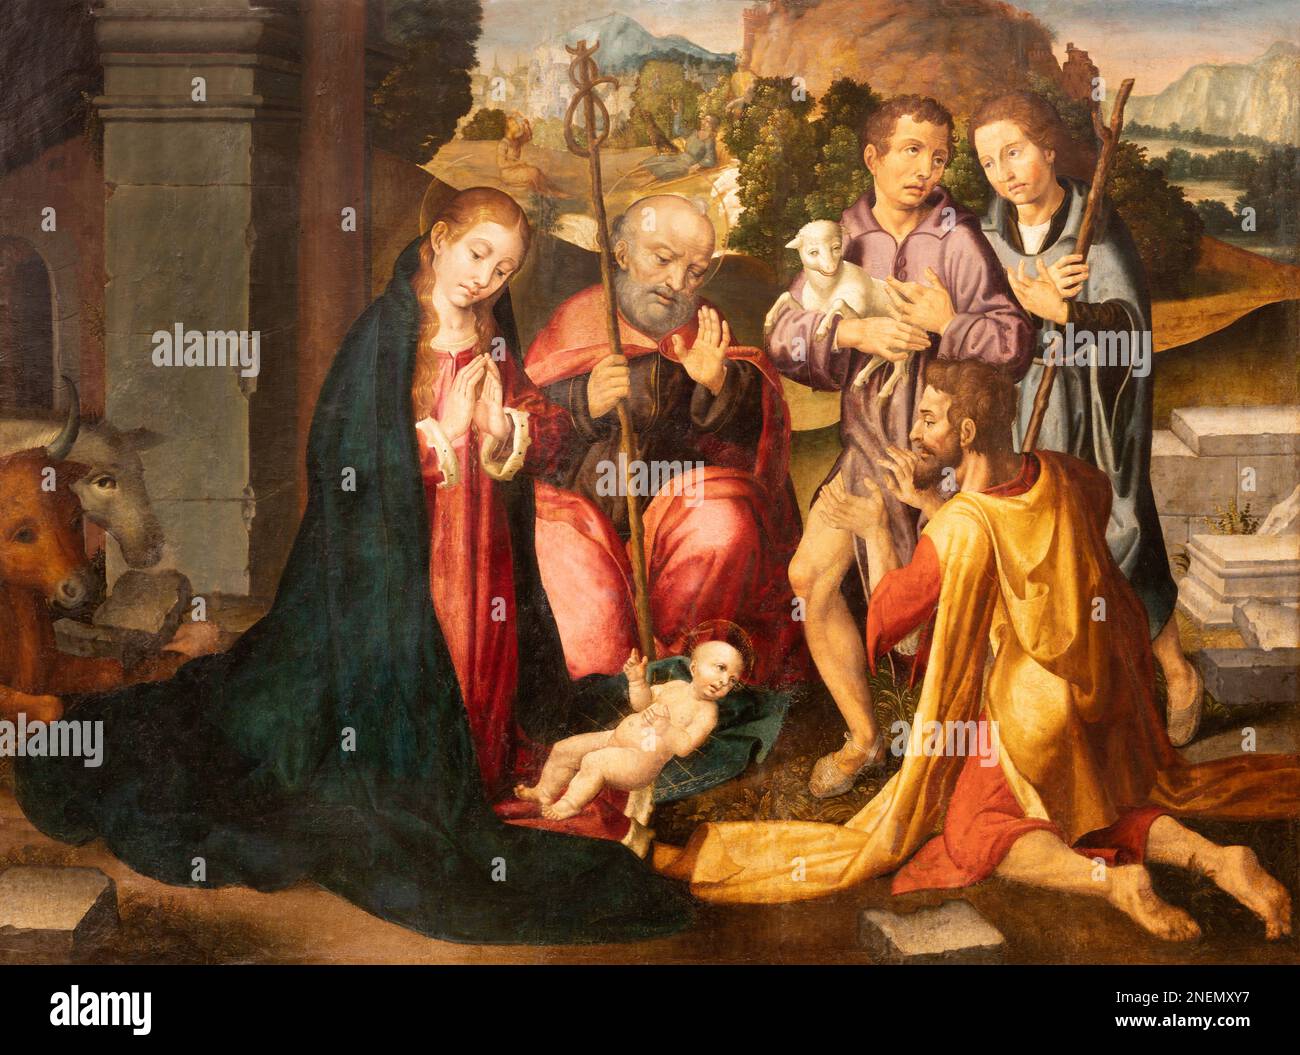 VALENCIA, SPANIEN - 14. FEBRUAR 2022: Das Gemälde der Adoration der Hirten in der Kathedrale von Filipo Paolo de San Leocadio aus dem Jahr 16. Cent. Stockfoto